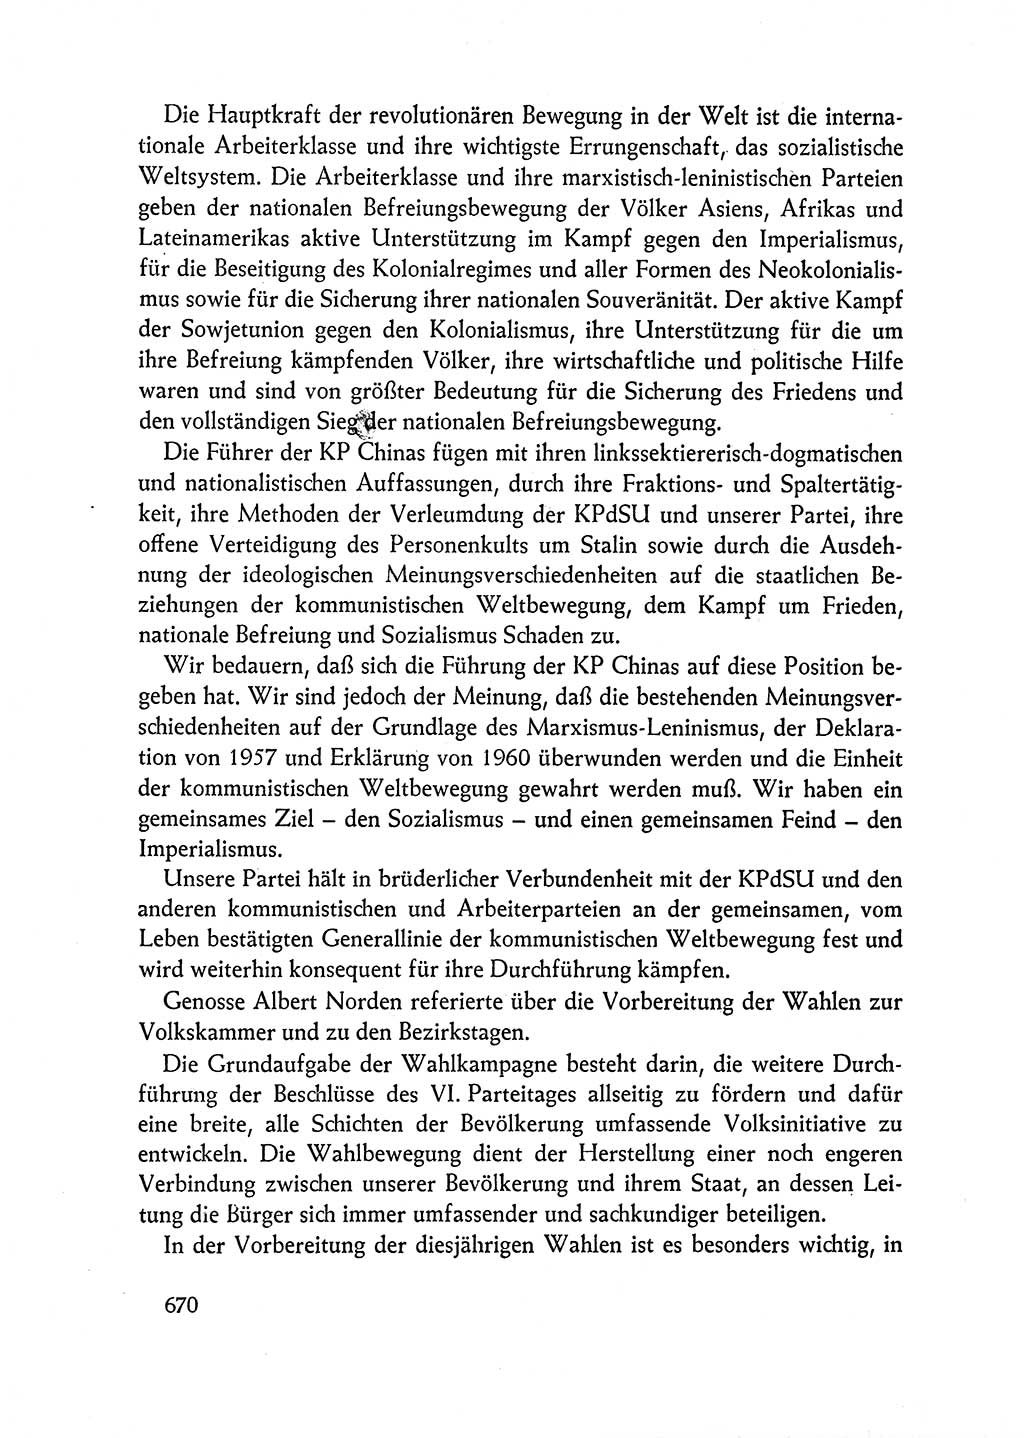 Dokumente der Sozialistischen Einheitspartei Deutschlands (SED) [Deutsche Demokratische Republik (DDR)] 1962-1963, Seite 670 (Dok. SED DDR 1962-1963, S. 670)